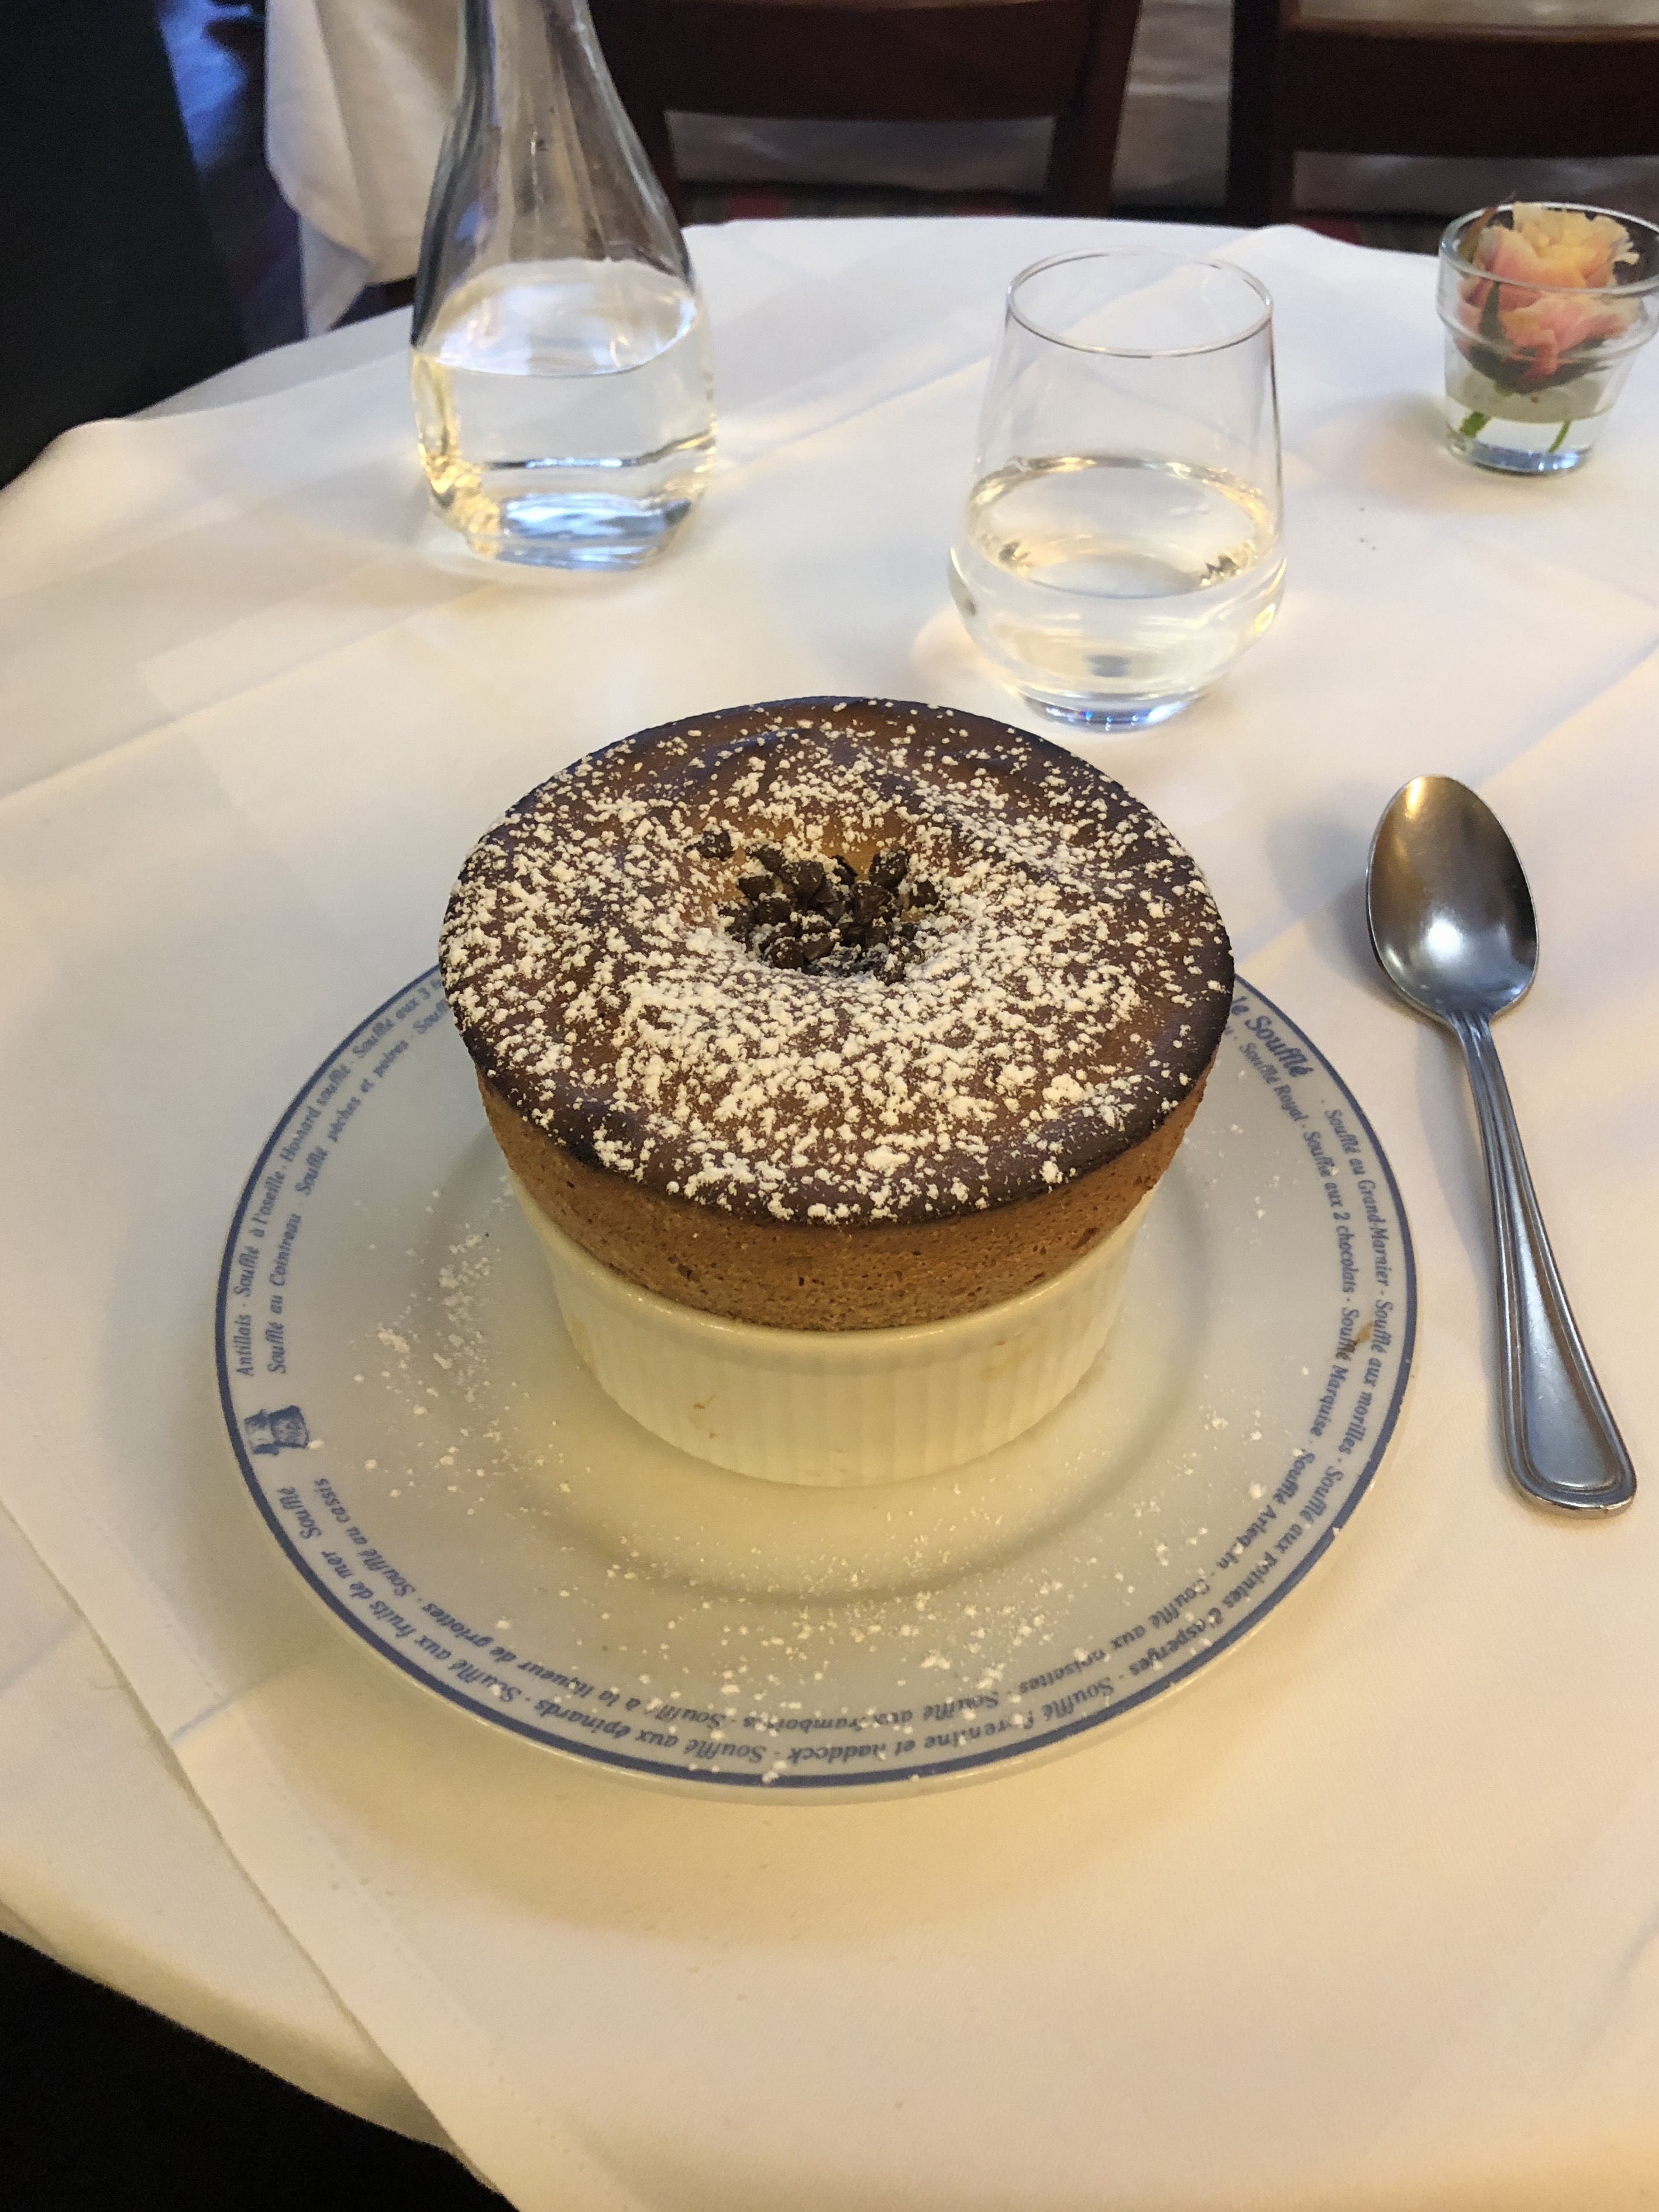 Best soufflé in Paris